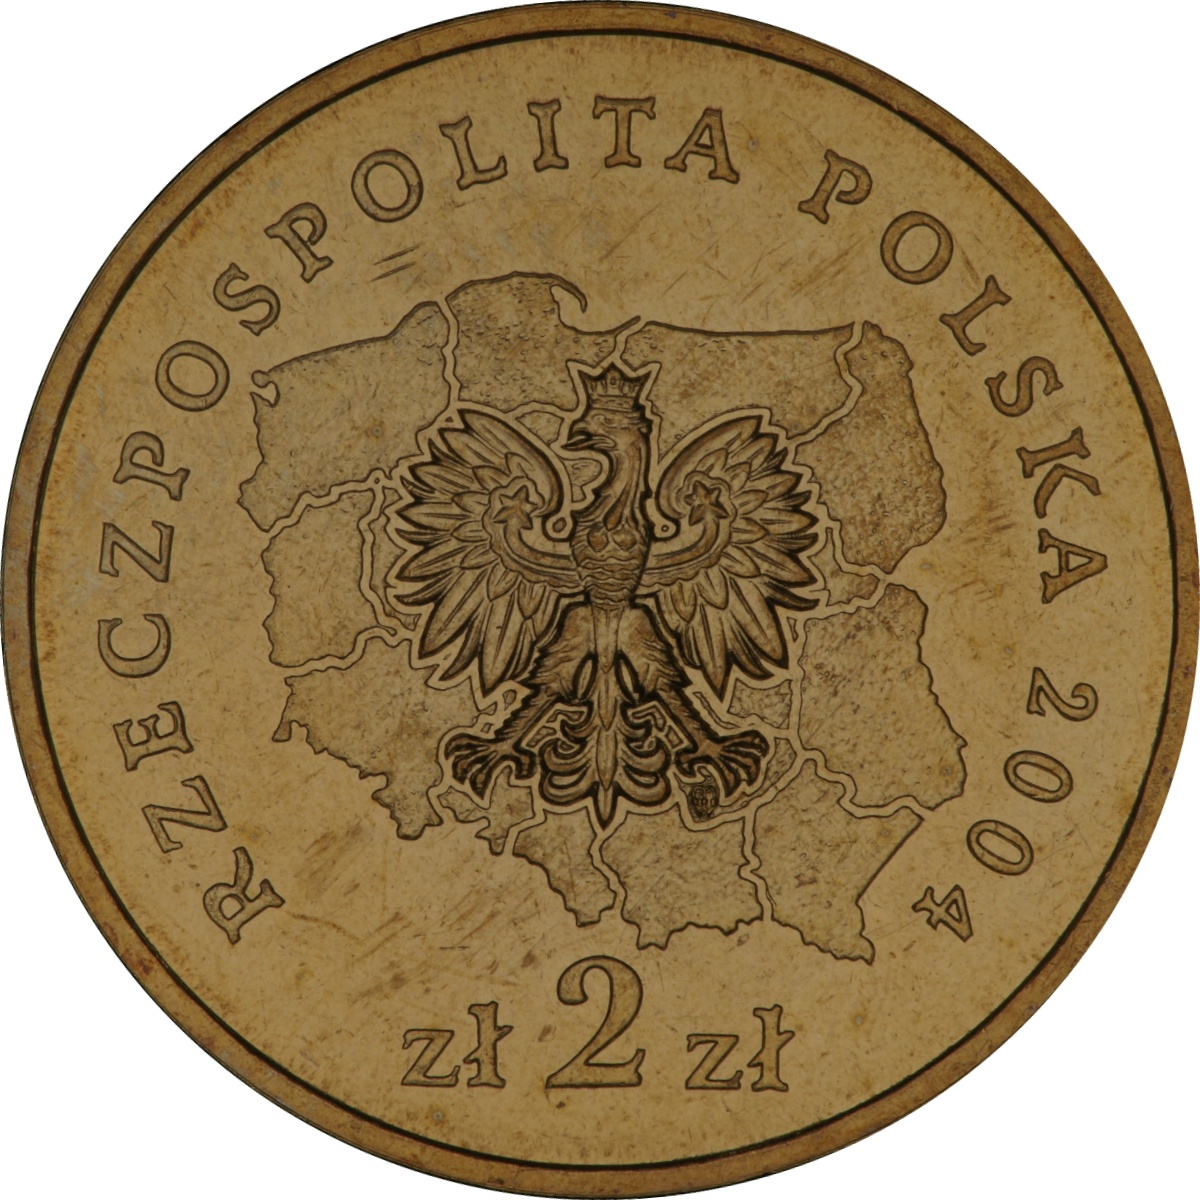 2zl-okolicznosciowe-wojewodztwo-mazowieckie-awers-monety